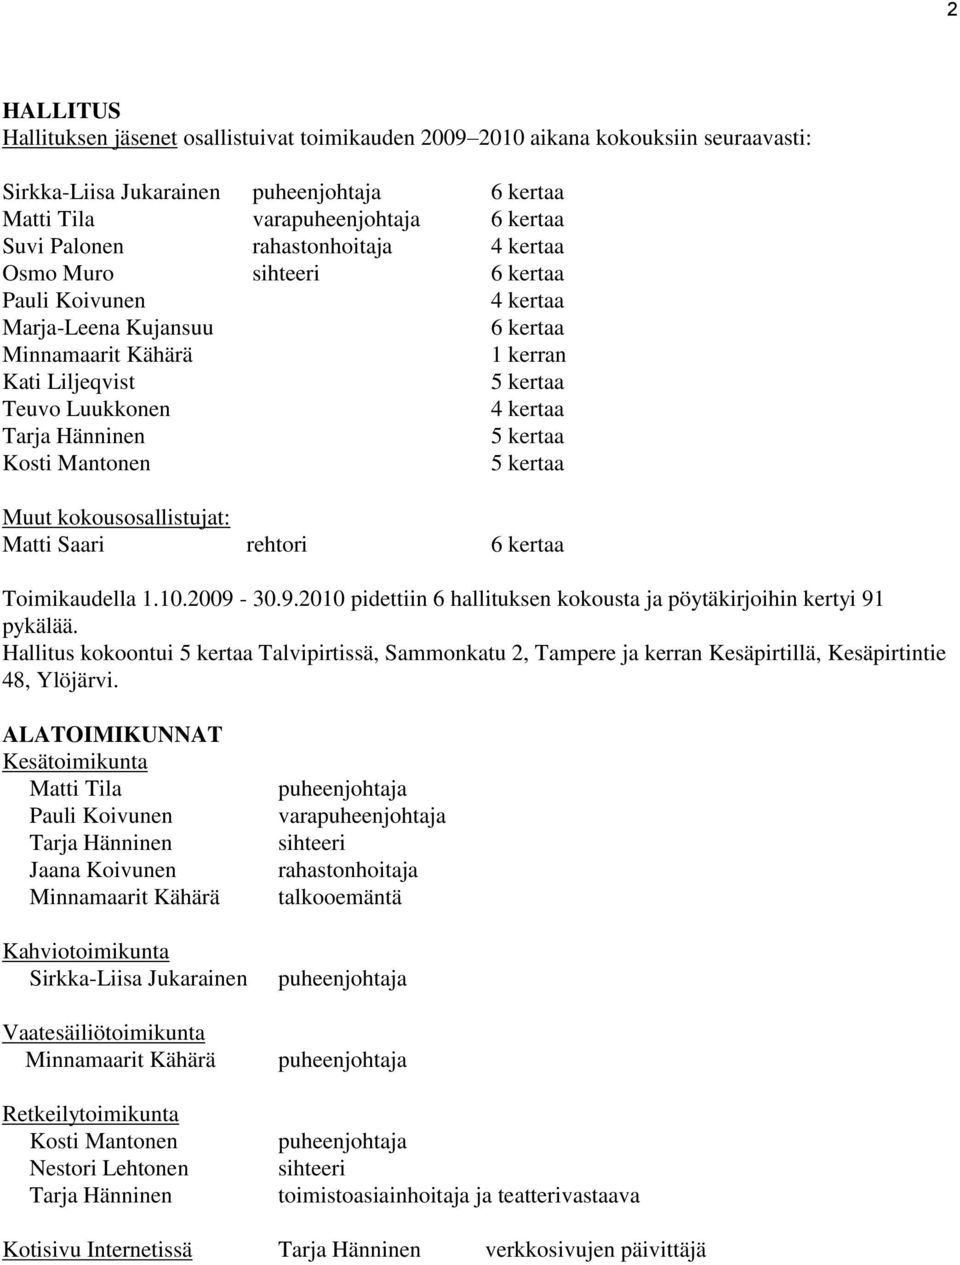 5 kertaa Kosti Mantonen 5 kertaa Muut kokousosallistujat: Matti Saari rehtori 6 kertaa Toimikaudella 1.10.2009-30.9.2010 pidettiin 6 hallituksen kokousta ja pöytäkirjoihin kertyi 91 pykälää.